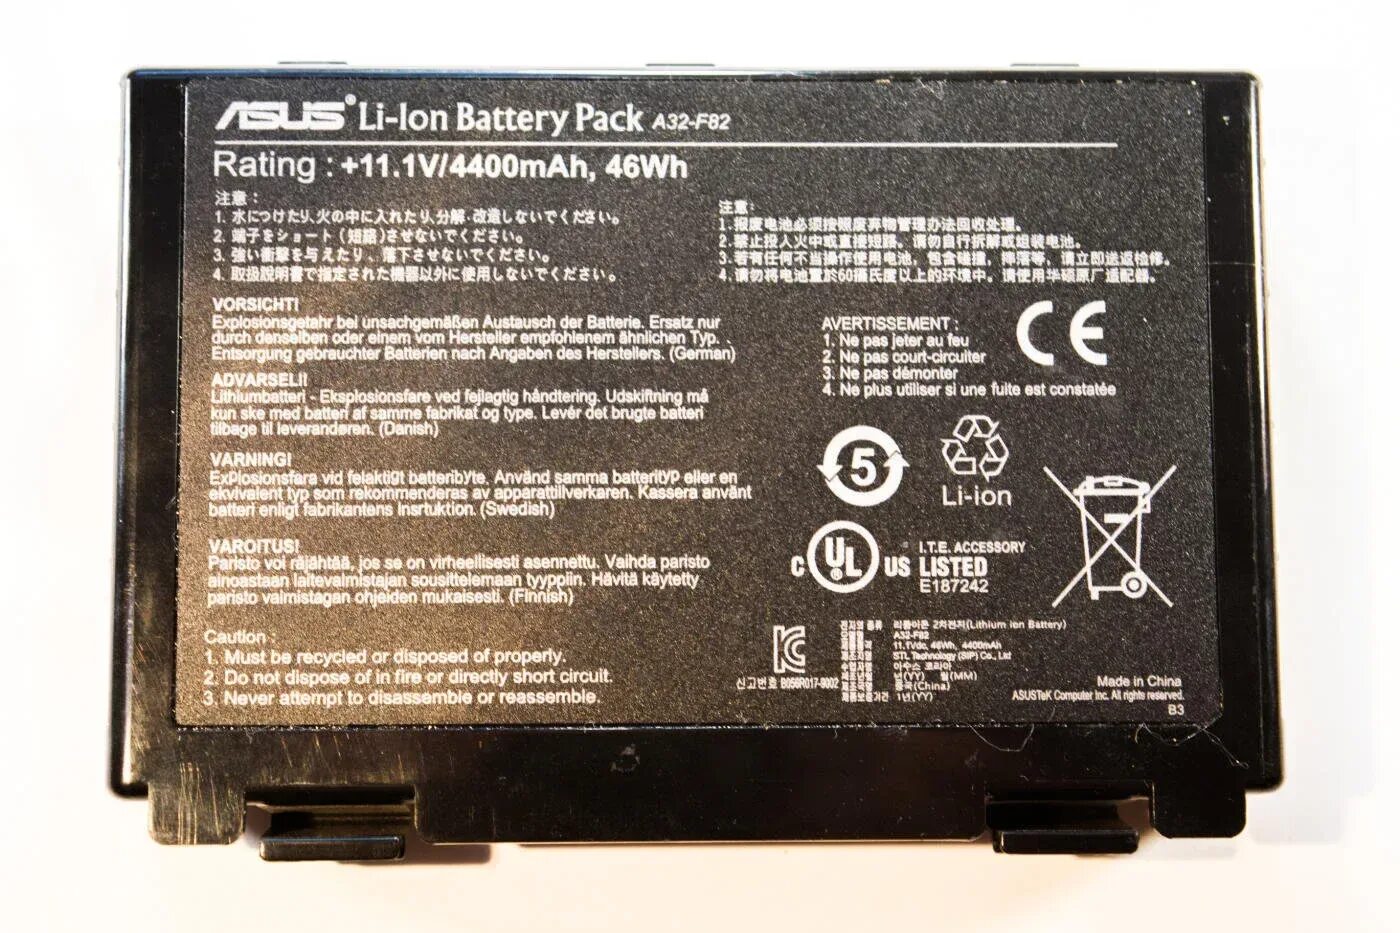 Lon battery. ASUS li-ion Battery Pack a32-f82. Li-lon Battery Pack a32-f82. ASUS li lon Battery Pack a32 f82. А32-f82 для ноутбука ASUS батарея разбор.